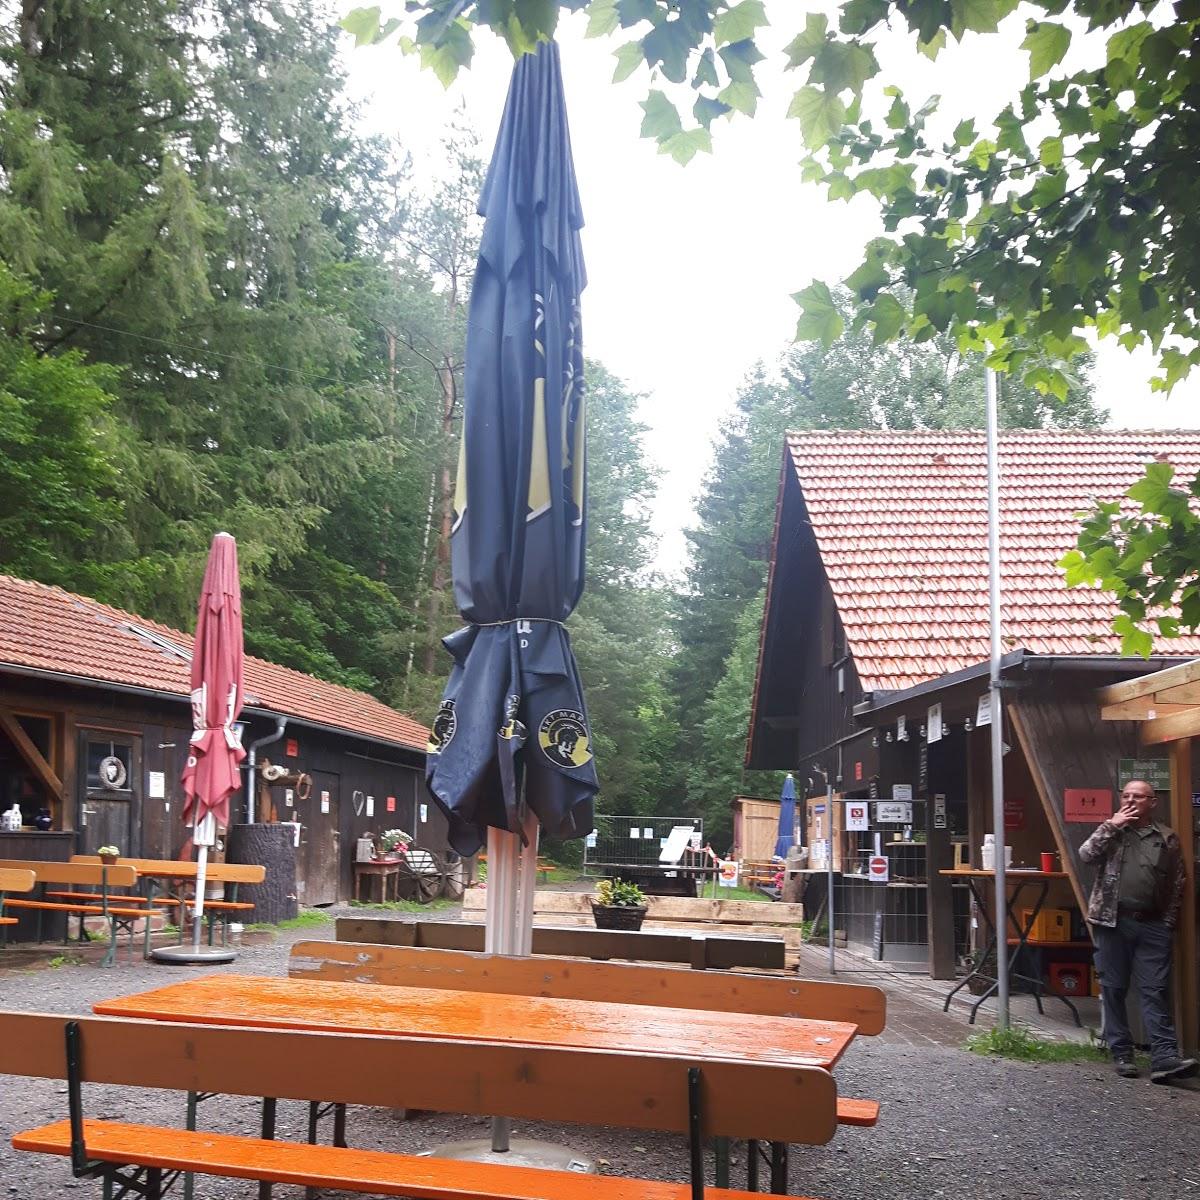 Restaurant "Forsthaus Gaststätte Sylvan" in  Bischbrunn